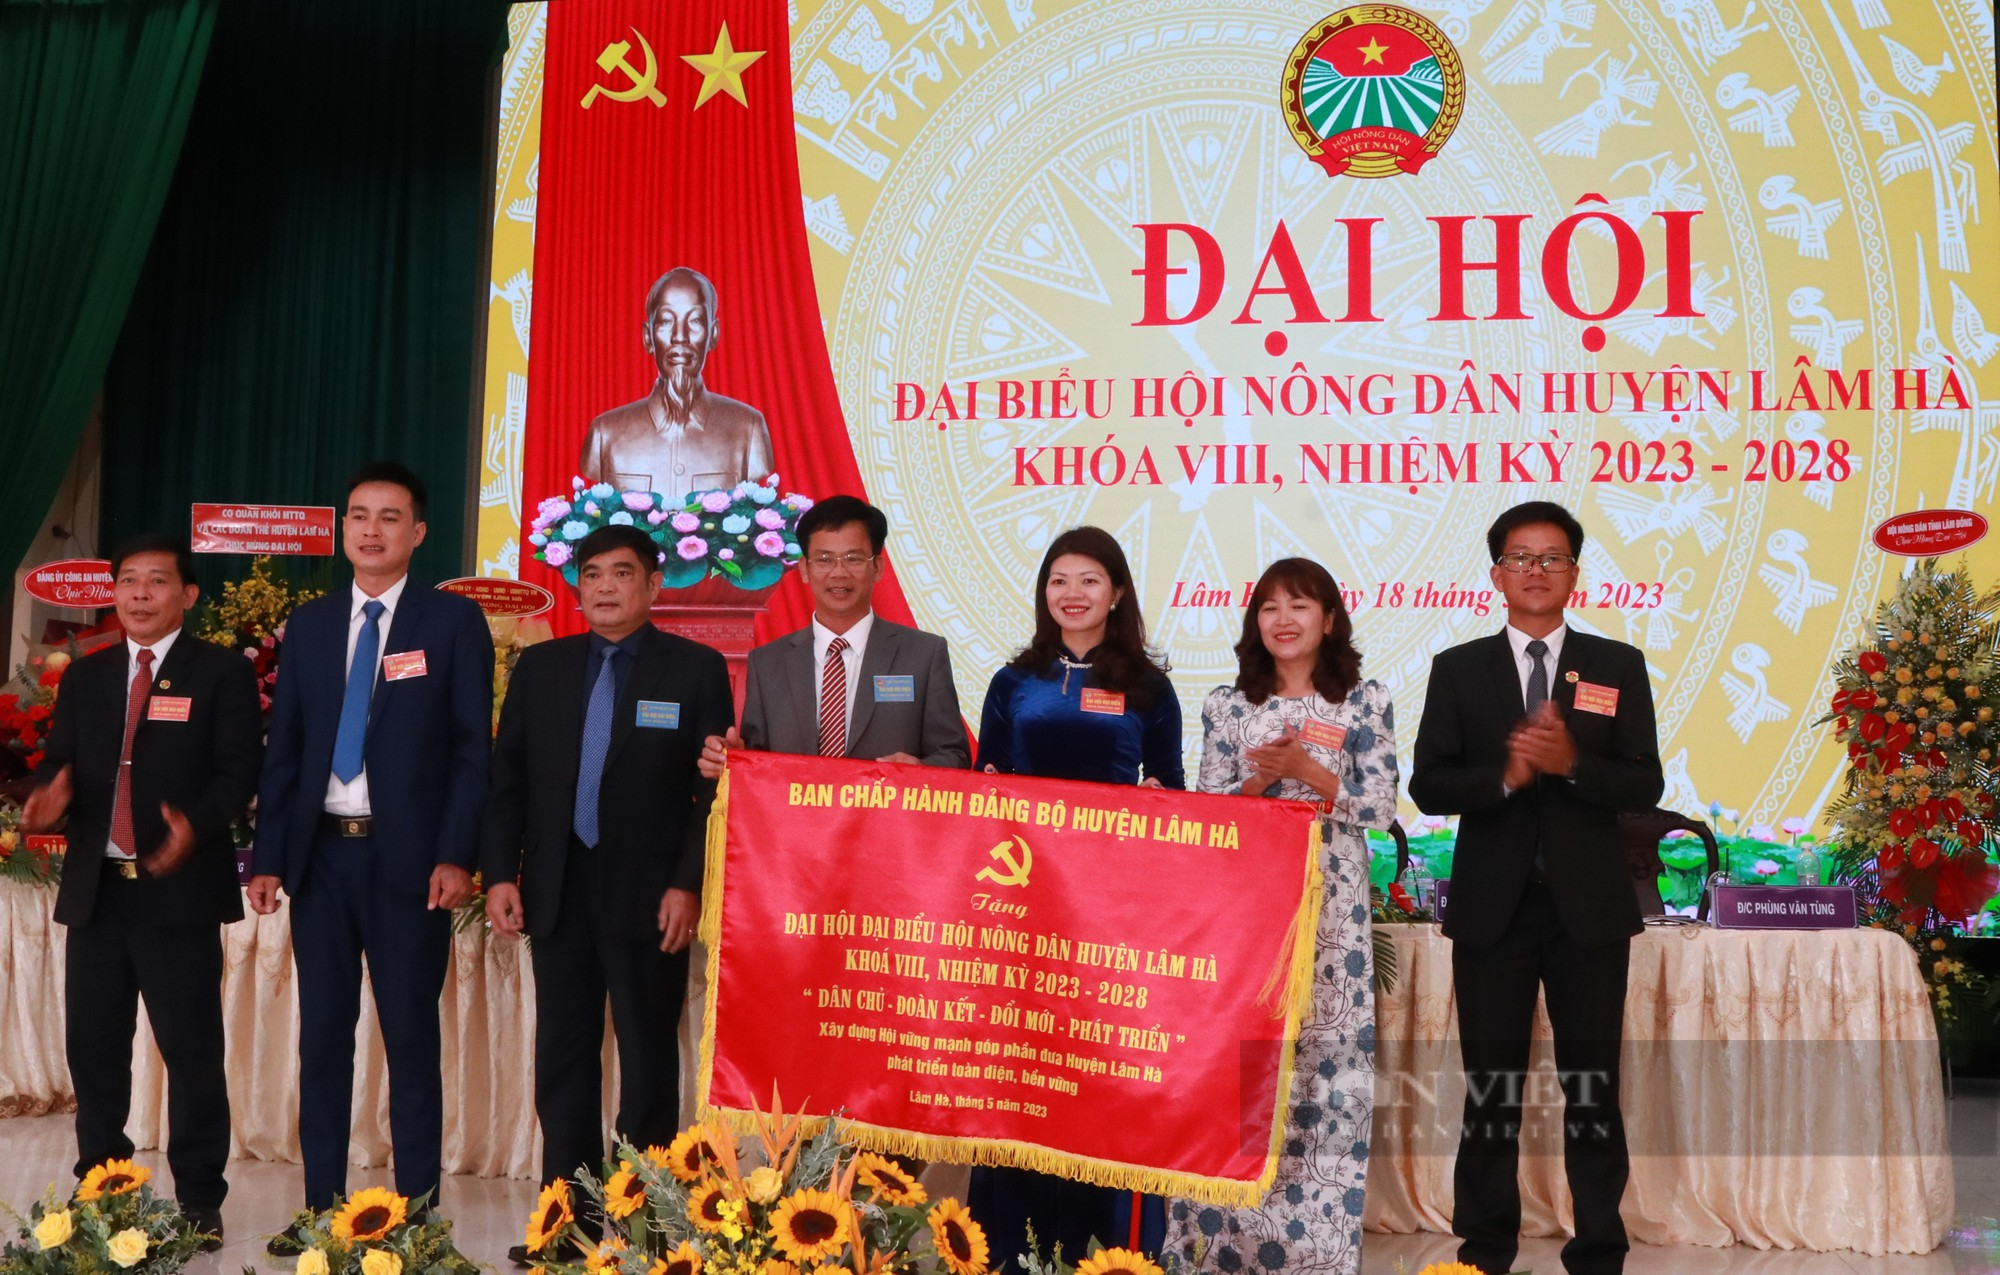 Huyện đầu tiên của tỉnh Lâm Đồng tổ chức Đại hội đại biểu Hội Nông dân, nữ chủ tịch tái đắc cử - Ảnh 1.